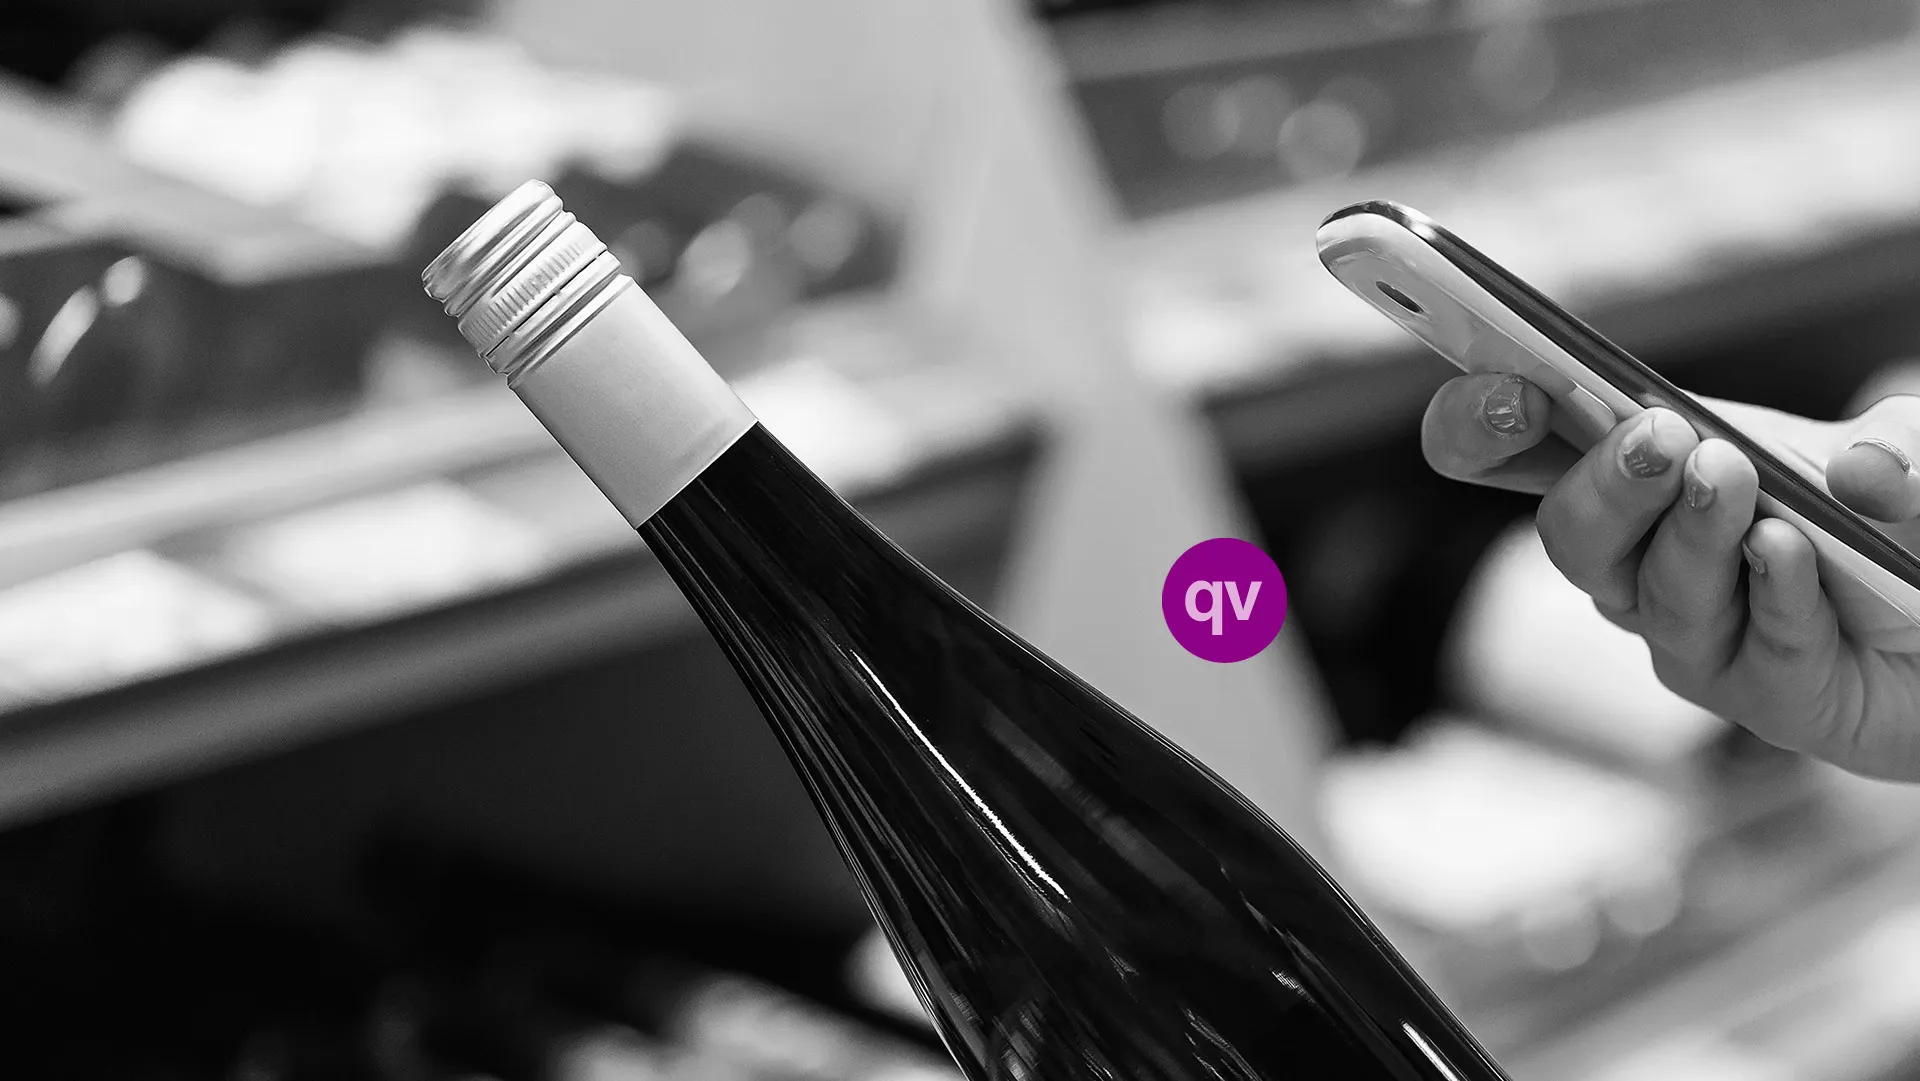 QRCODE VIN ETIQUETTE QR CODE Réglement Européen étiquetage ingrédient et valeur nutritionnelle des vins Etiquette vin 8 Décembre réforme ETIQUETAGE VINISCAN VITIQUETTE VINICODE